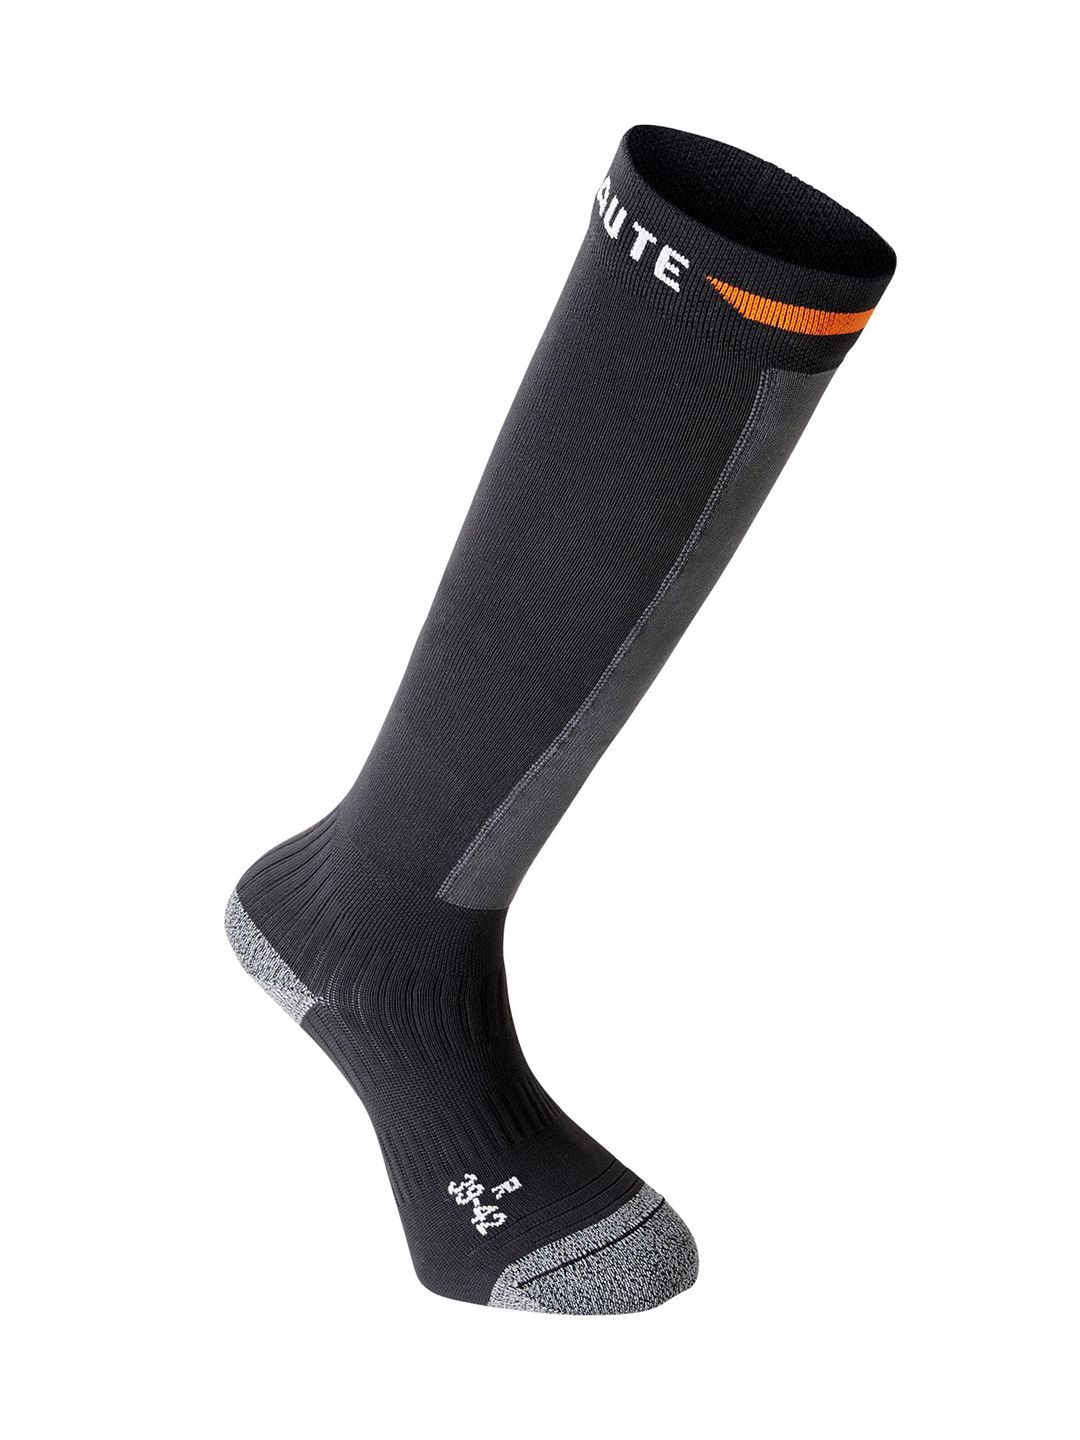 Geonaute By Decathlon Unisex Black & Grey Patterned Knee-Length Socks Price in India